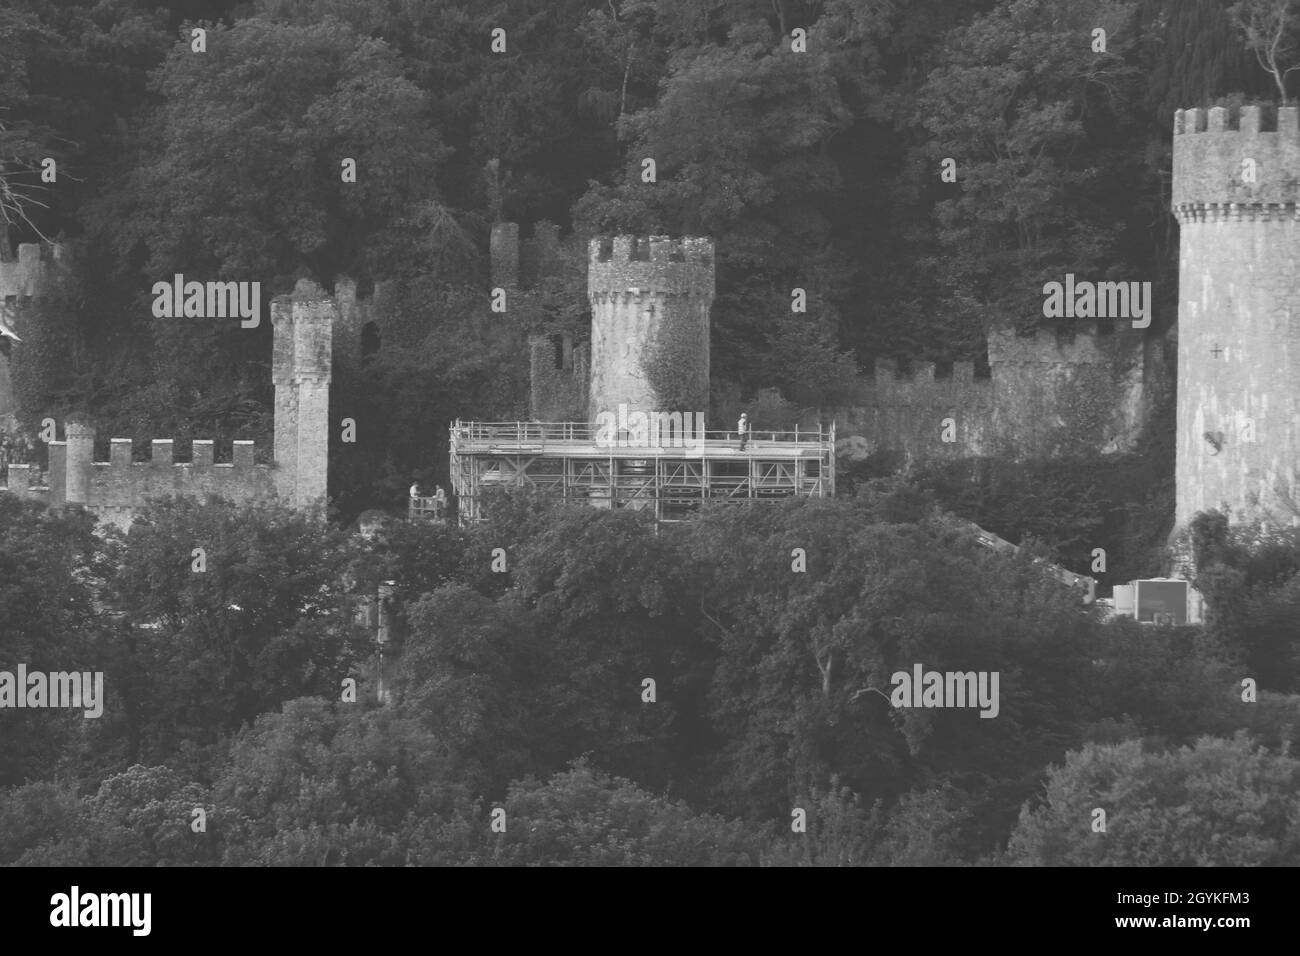 Ich bin eine Berühmtheit Gwrych Castle, die Vorbereitungen laufen gut, da das Schloss für ITV umgewandelt wird Ich bin eine Berühmtheit Holen Sie mich hier mit Ant und Dec zum zweiten Mal in Folge Stockfoto